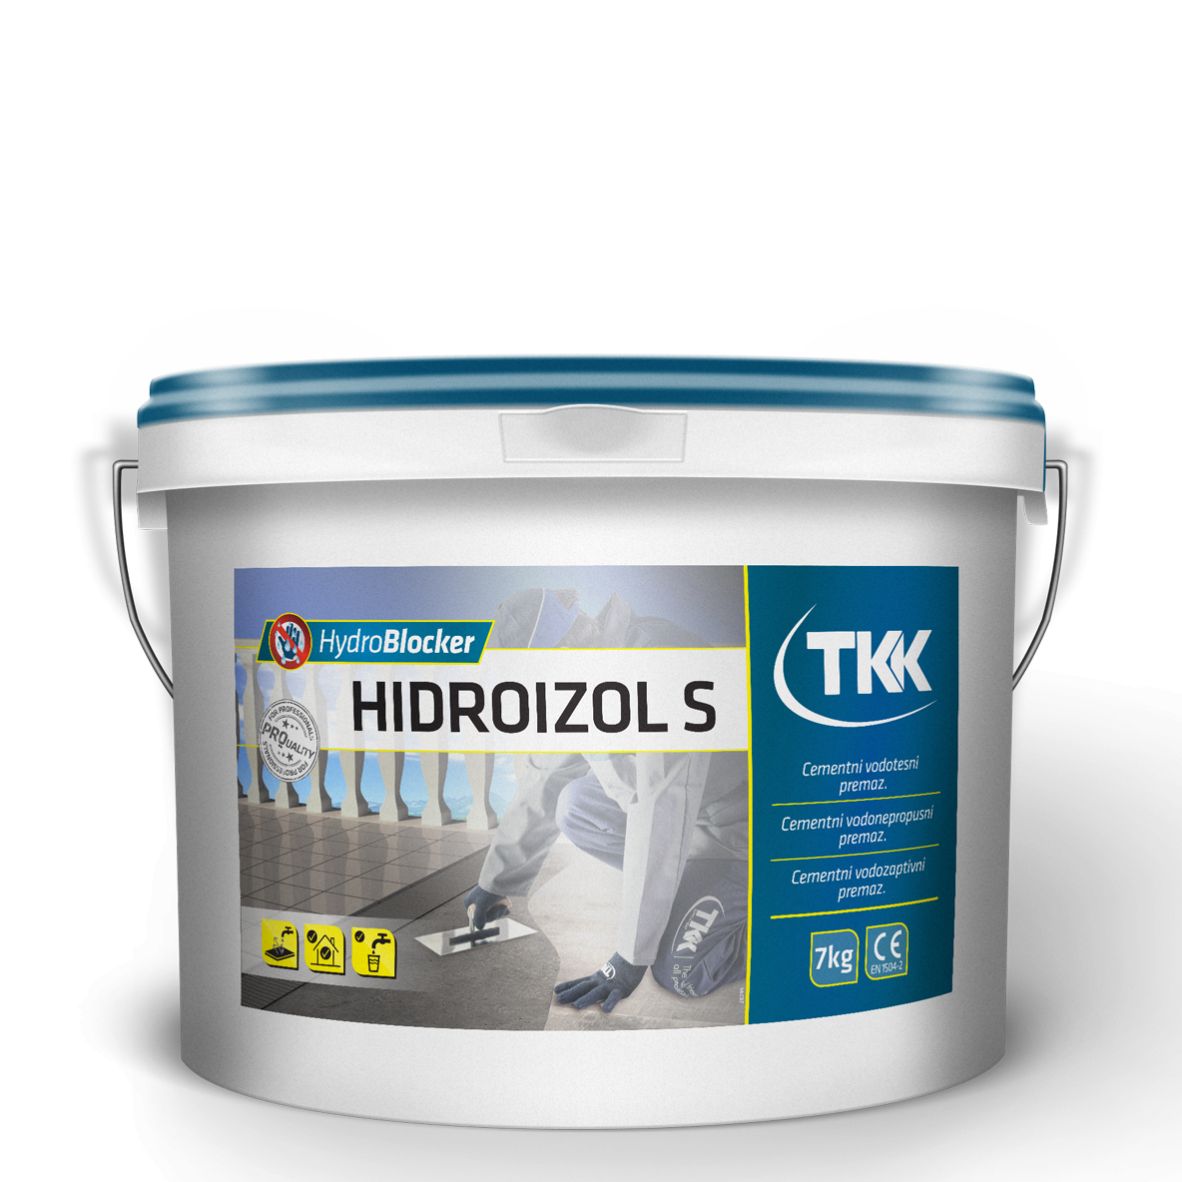 Hydroblocker hidroizol s